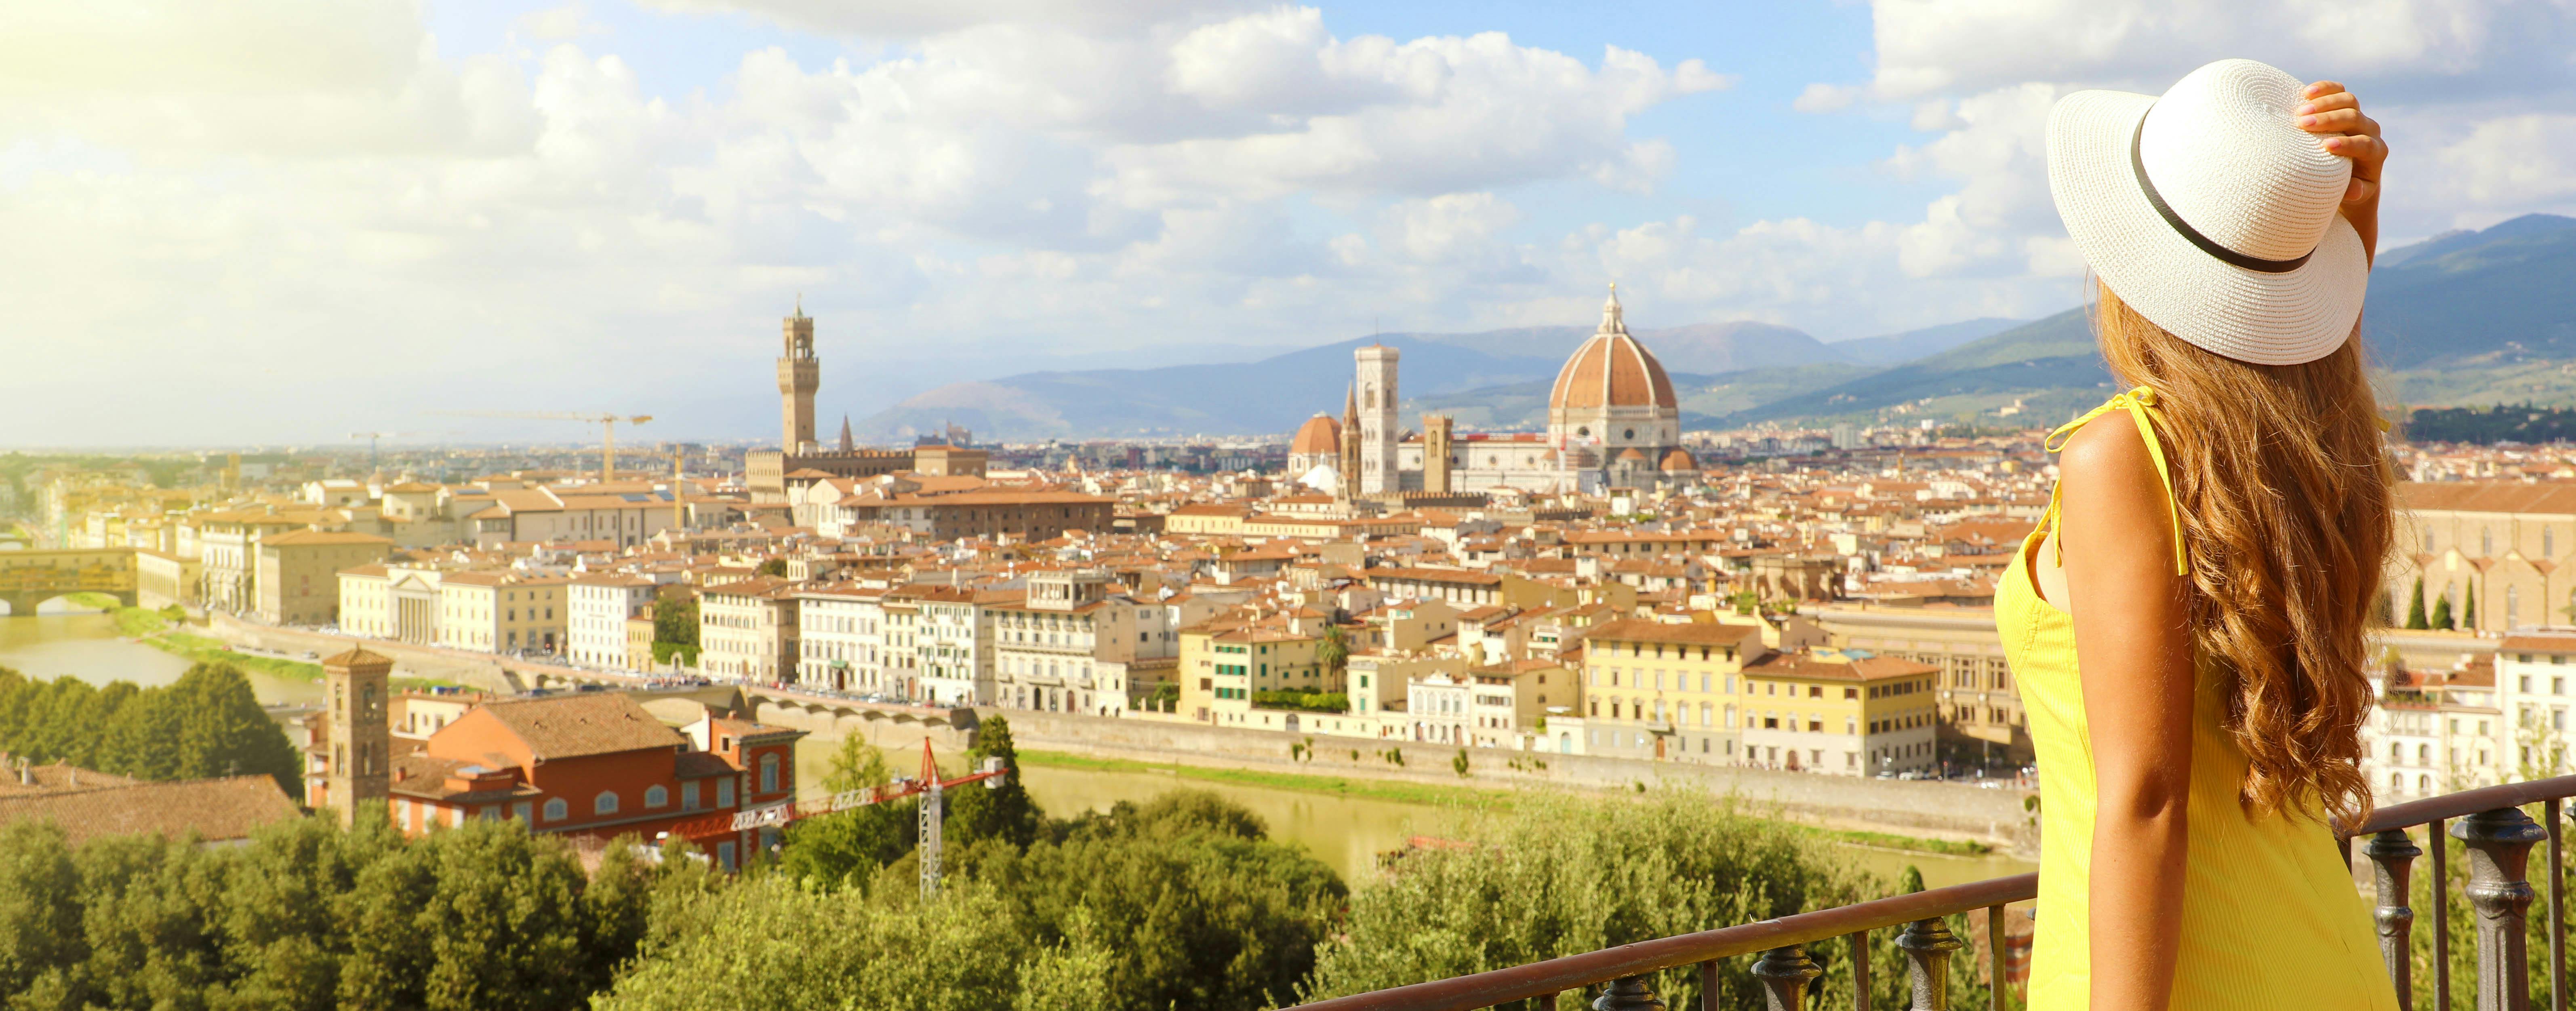 Pase de 5 días para visitar Florencia con Galería Uffizi, Galería de la Academia y cúpula